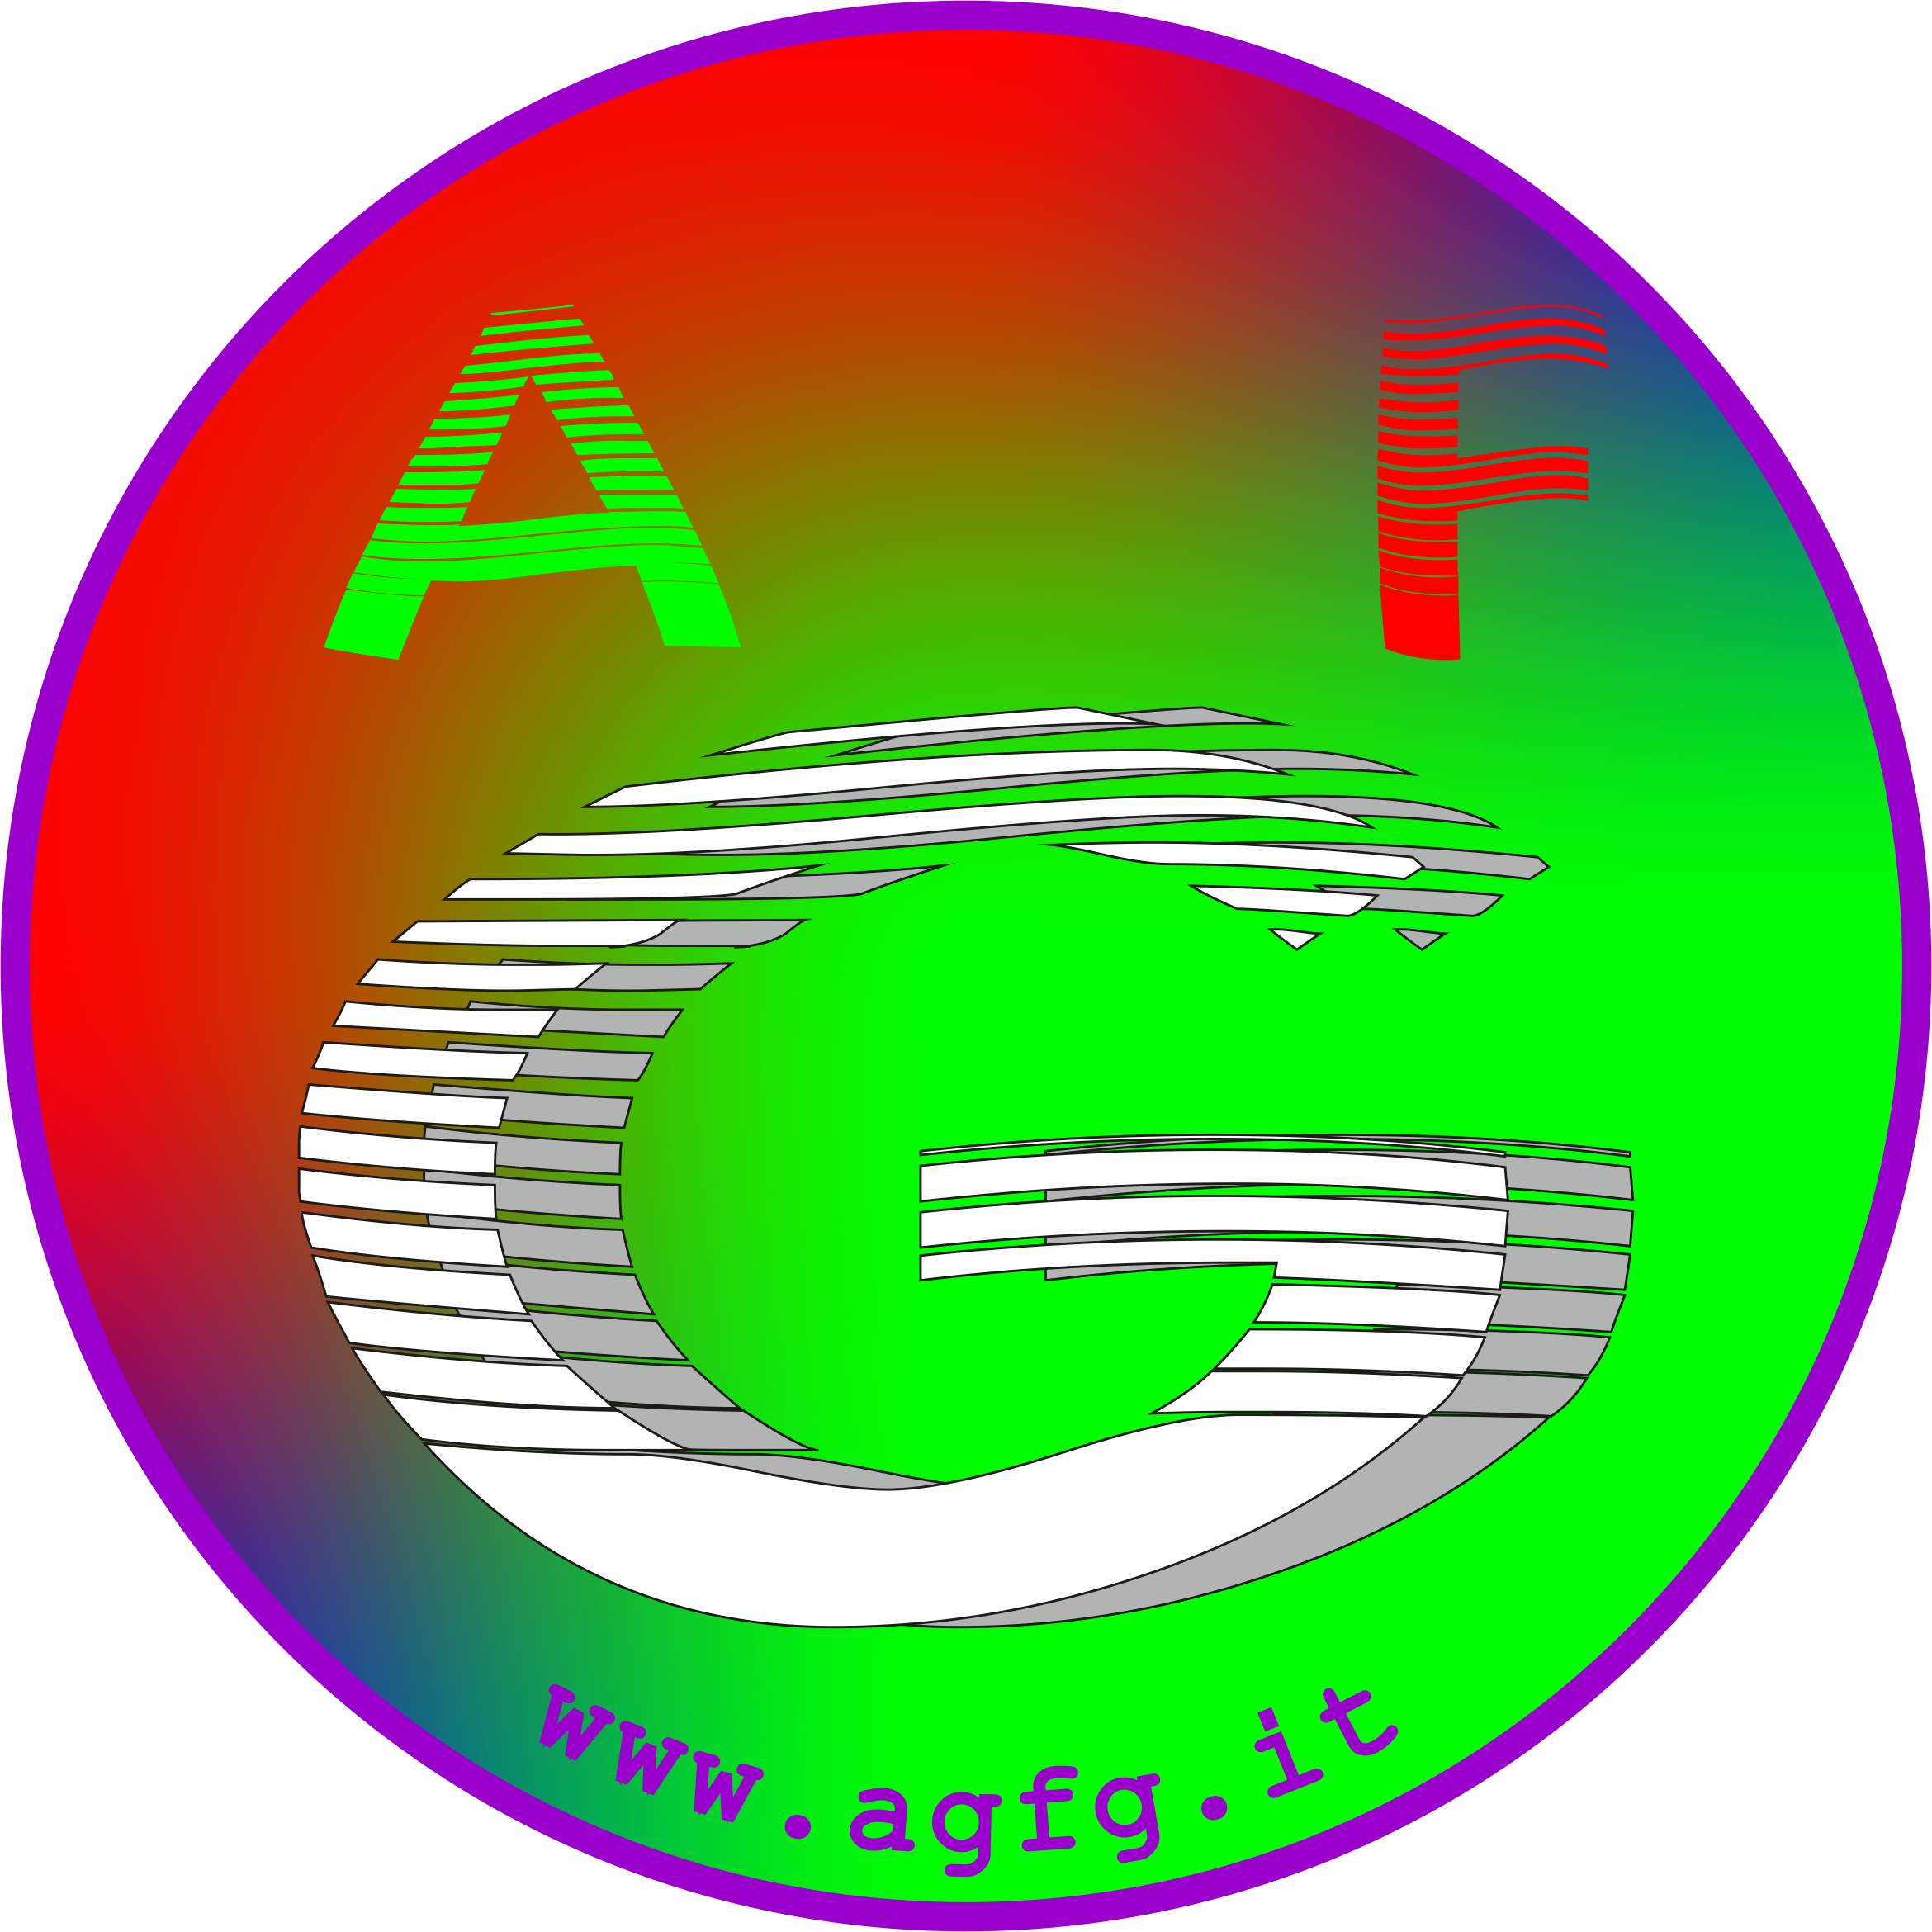 AGFG - Di tutto, di più